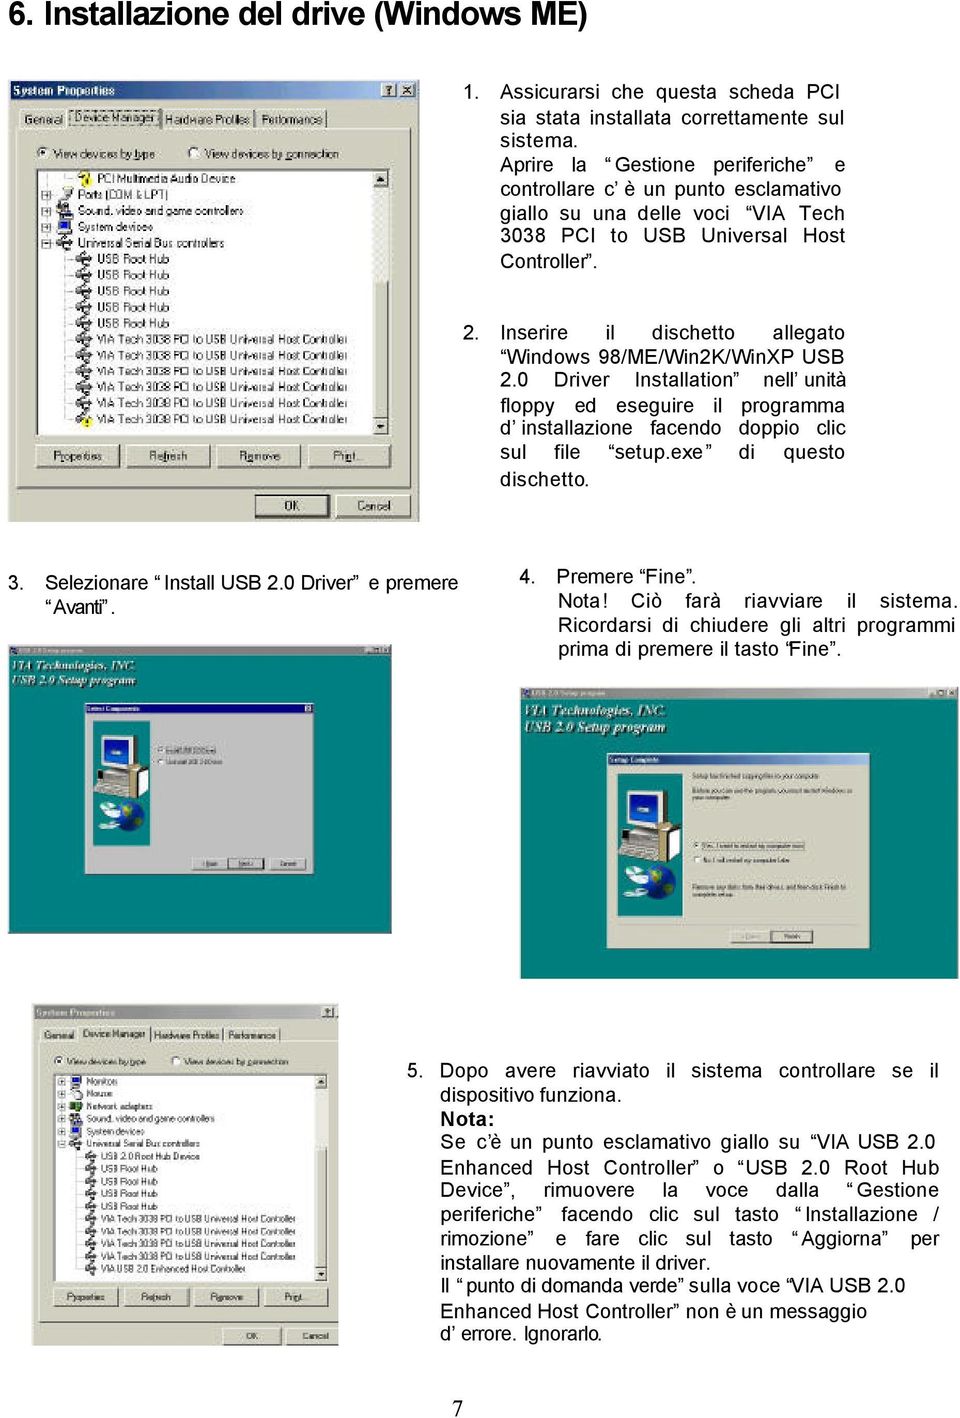 Inserire il dischetto allegato Windows 98/ME/Win2K/WinXP USB 2.0 Driver Installation nell unità floppy ed eseguire il programma d installazione facendo doppio clic sul file setup.